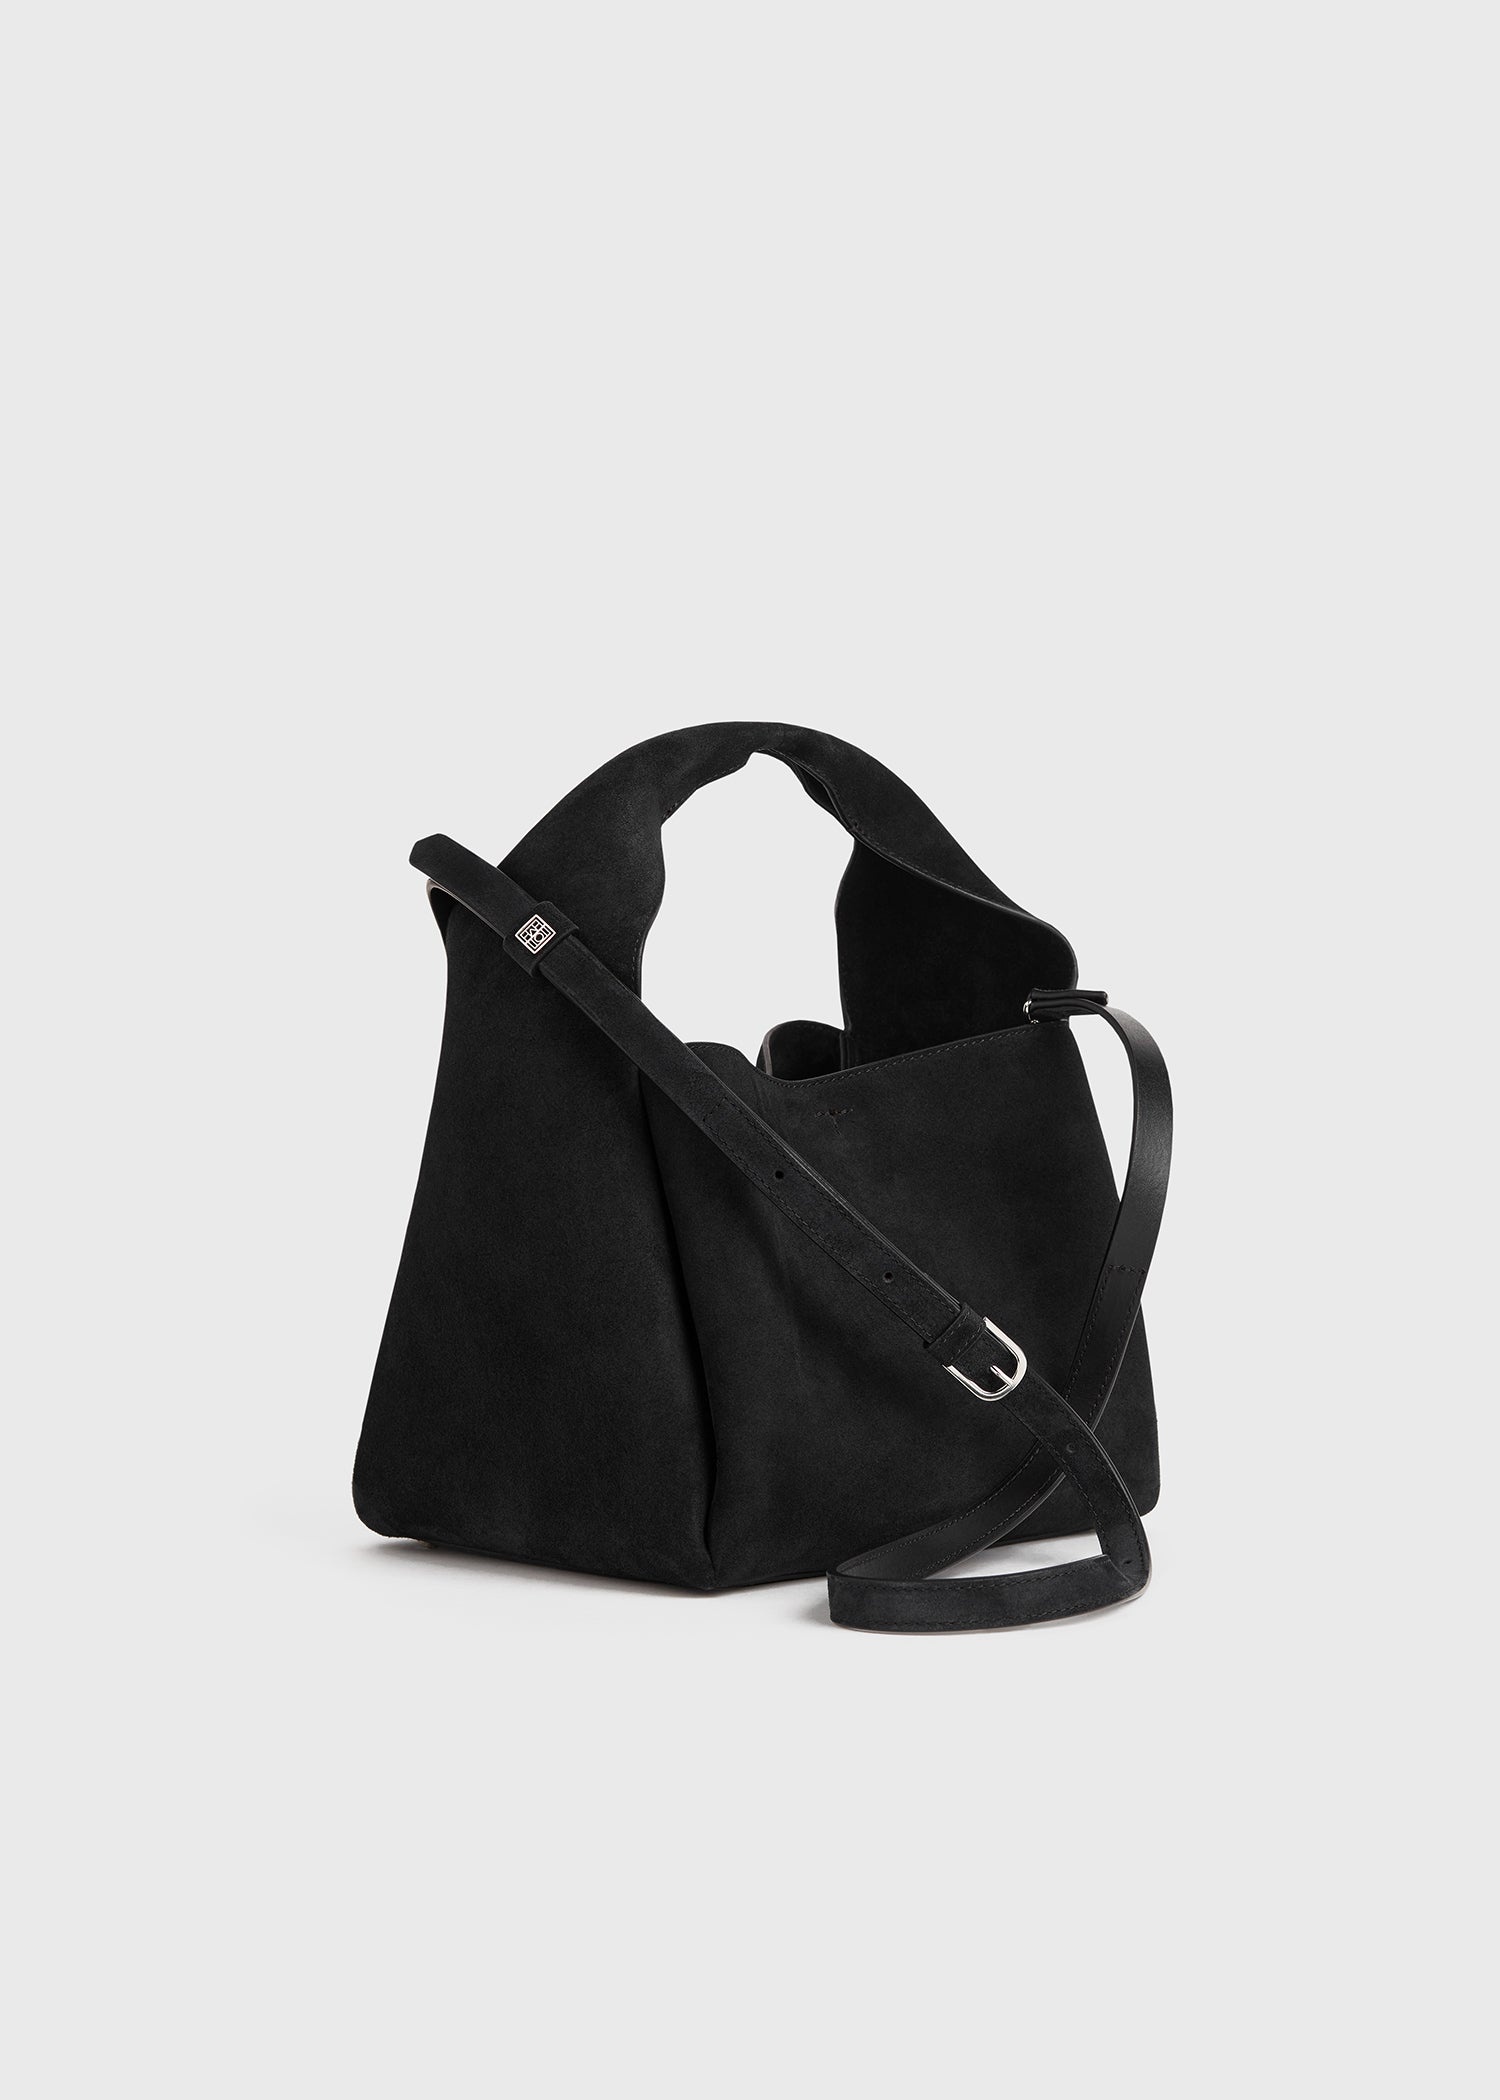 Bucket bag black suede - 8